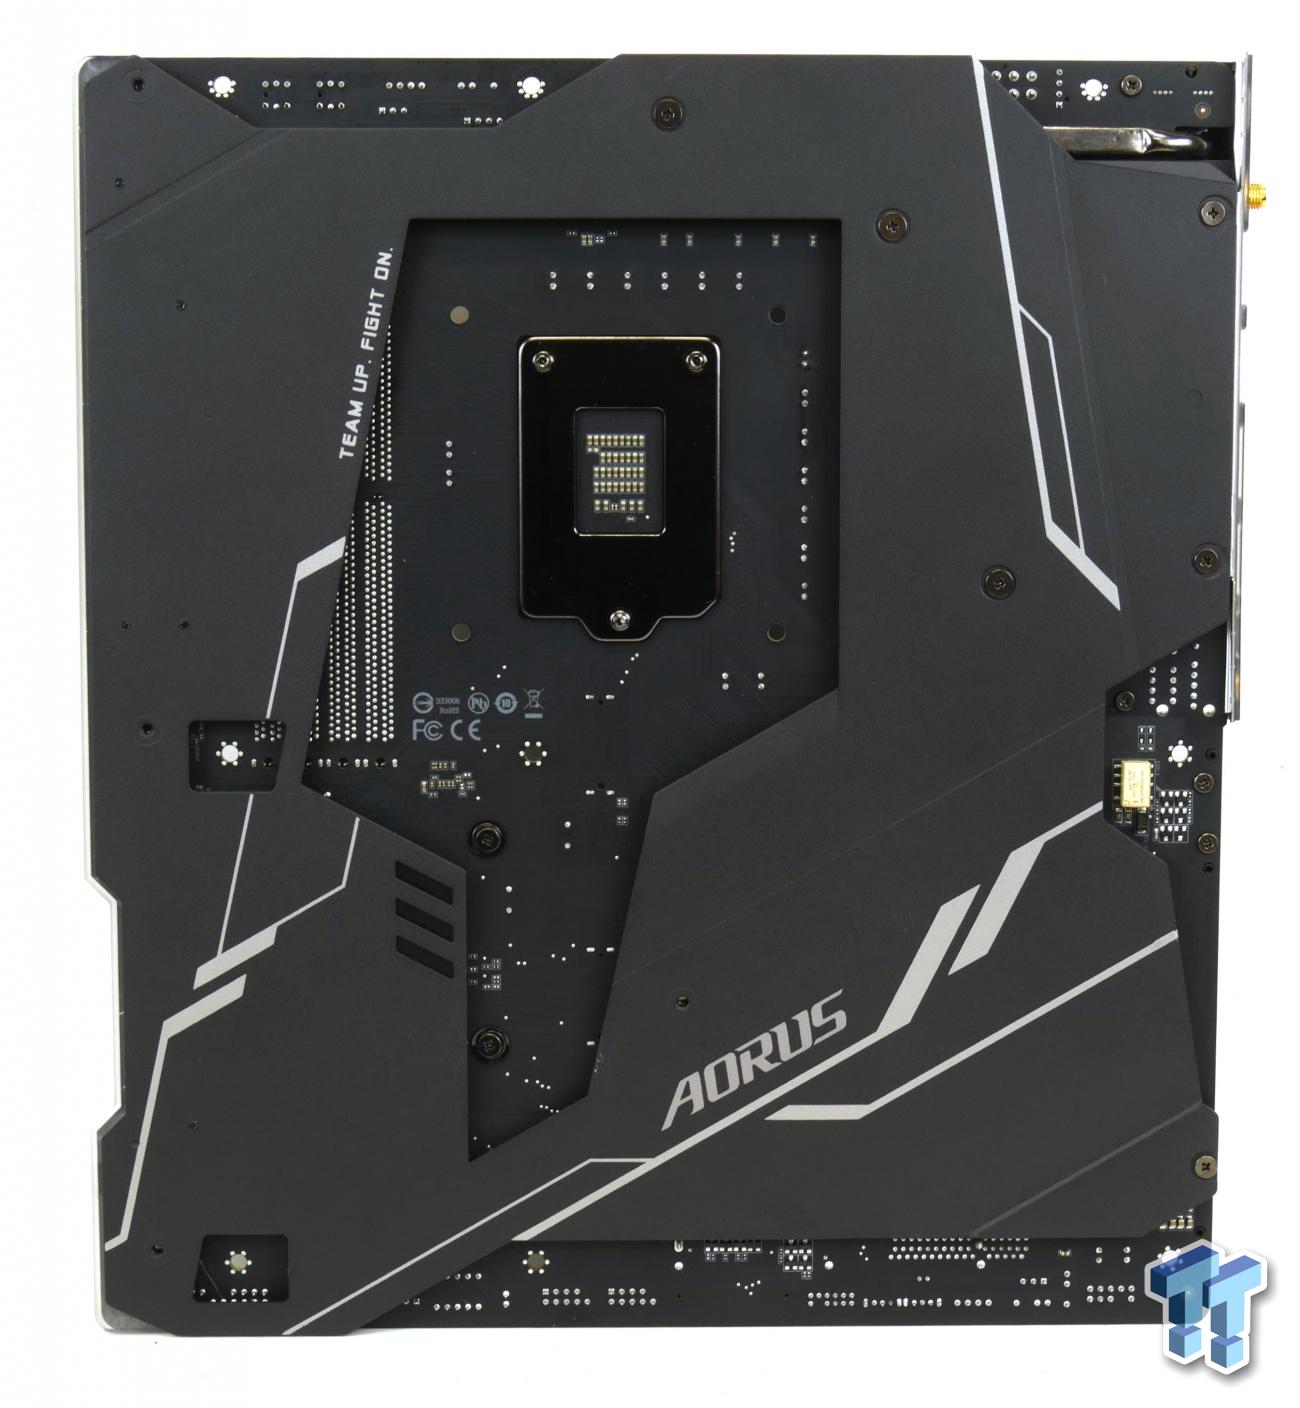 GIGABYTE Z390 Aorus Xtreme (Intel Z390) Motherboard Review